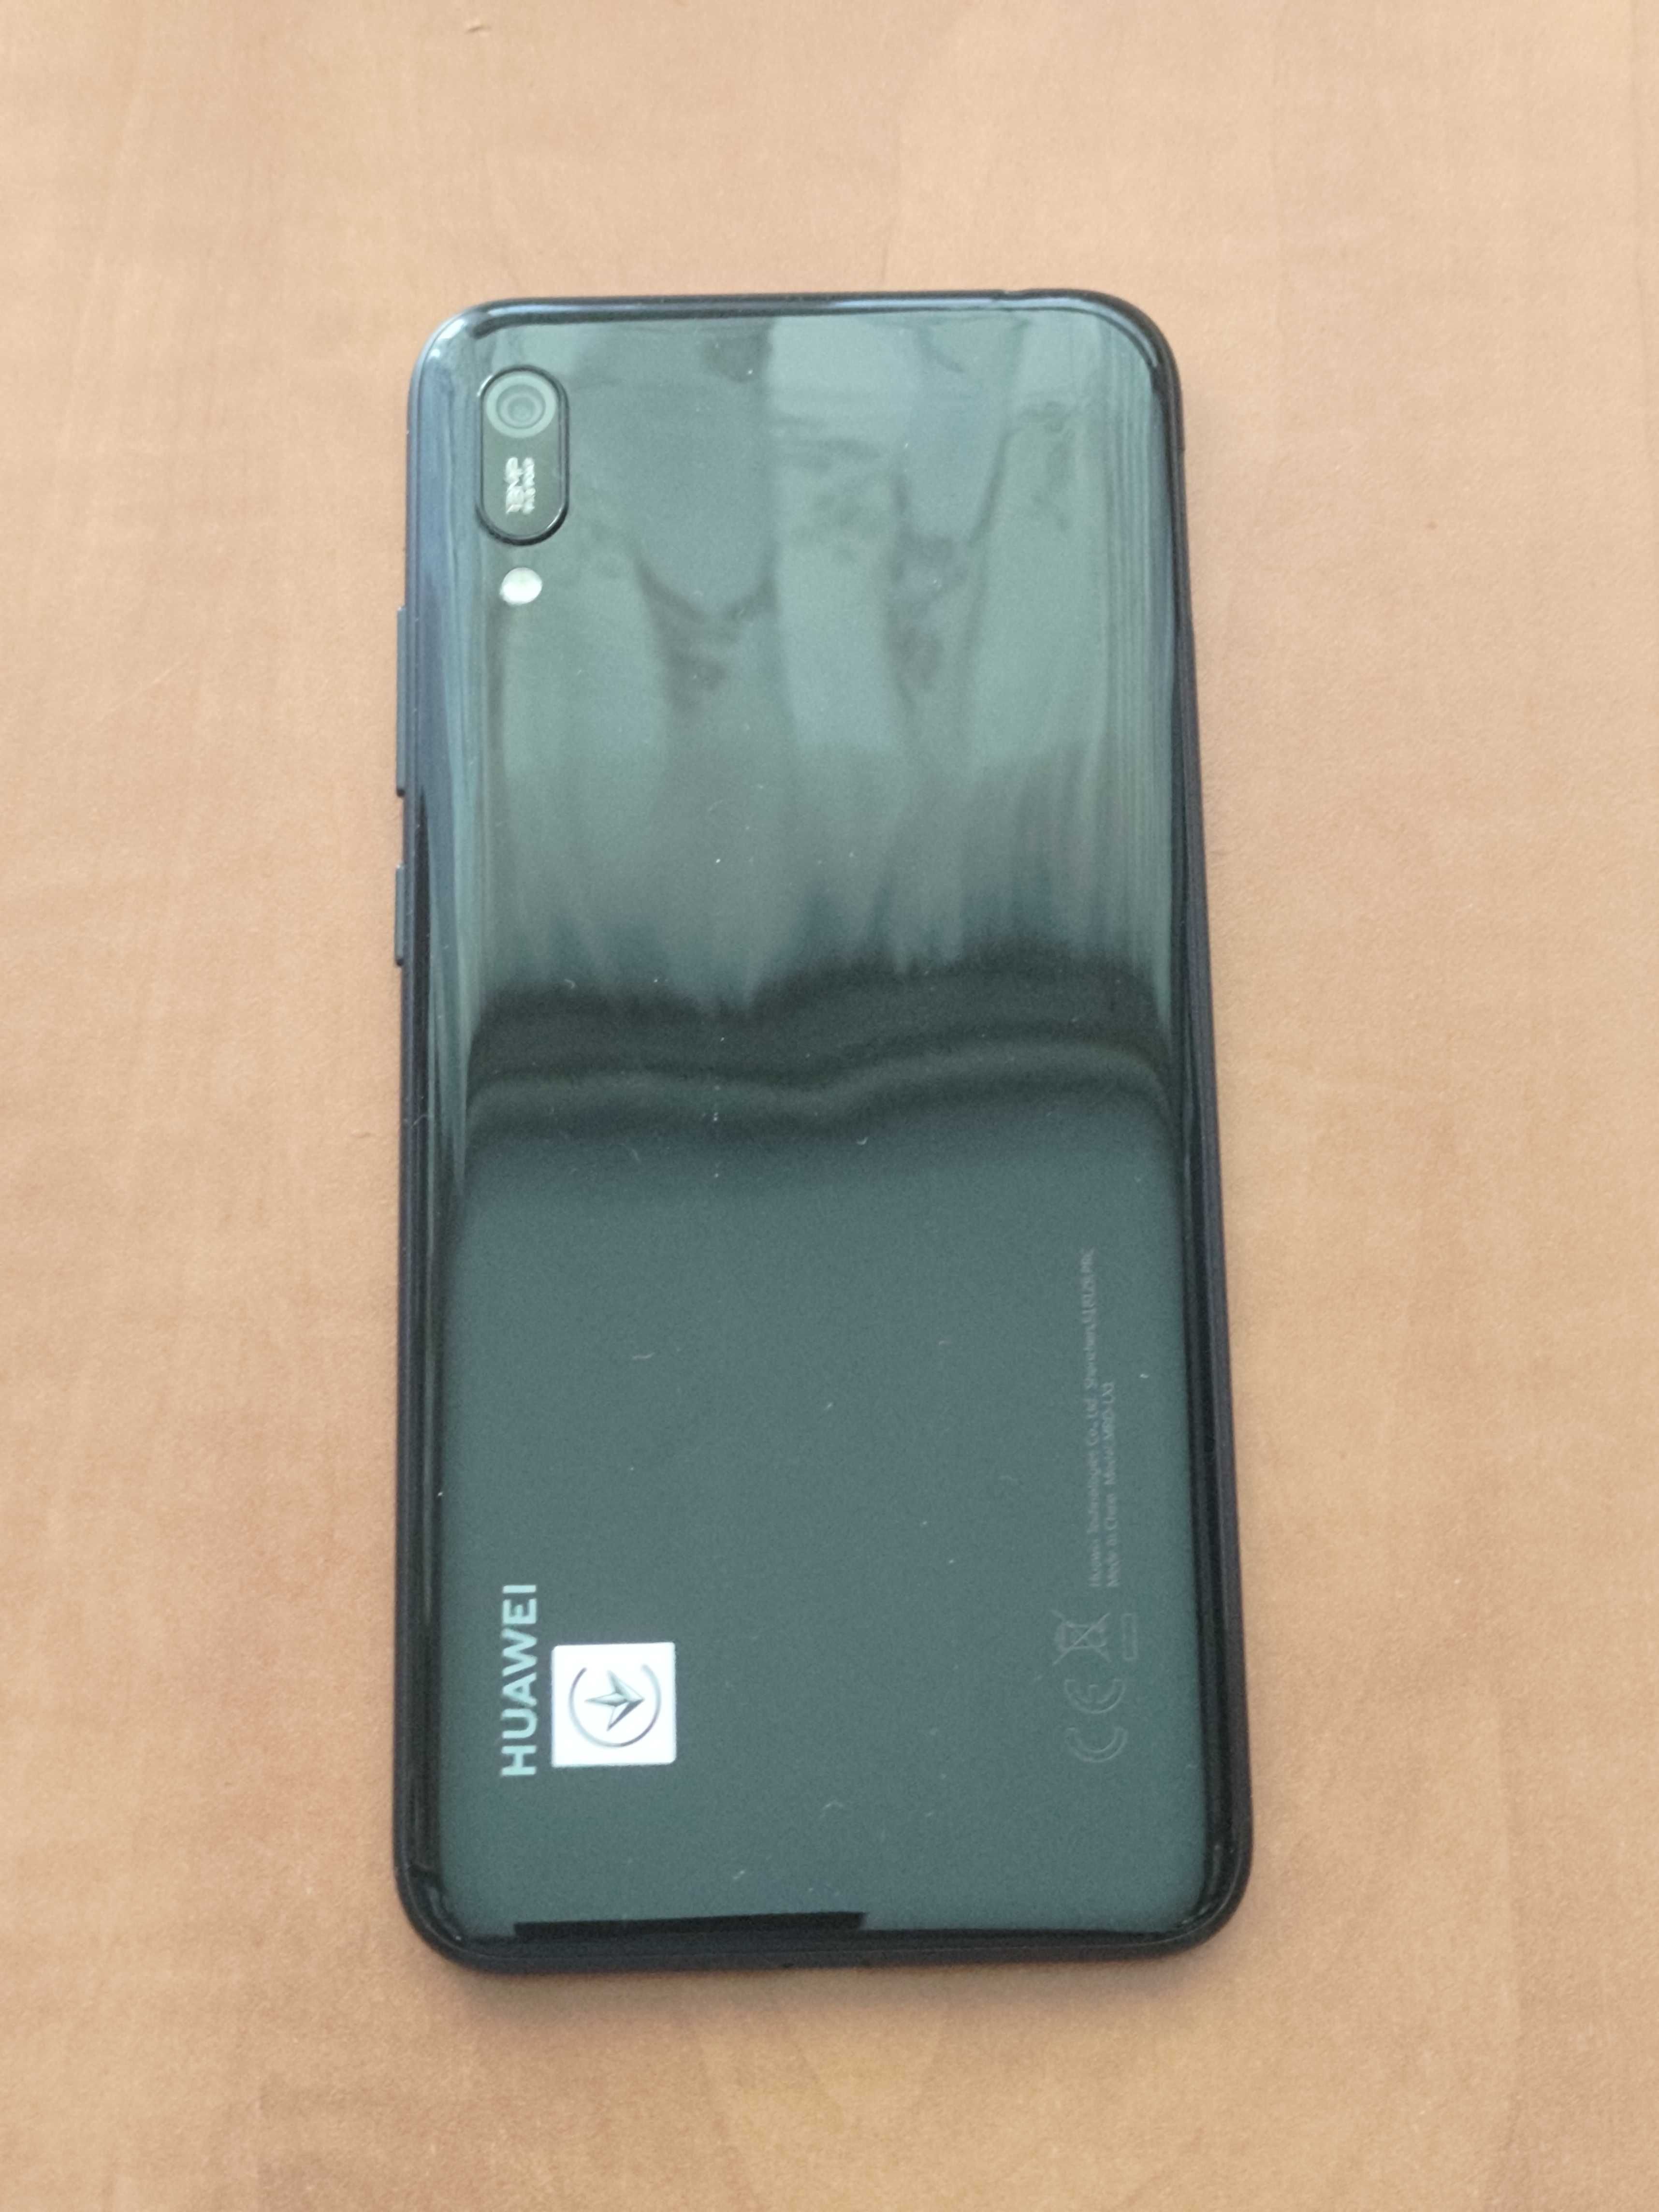 Telefon mobil Huawei Y6 2019 Dual SIM 32GB 4G